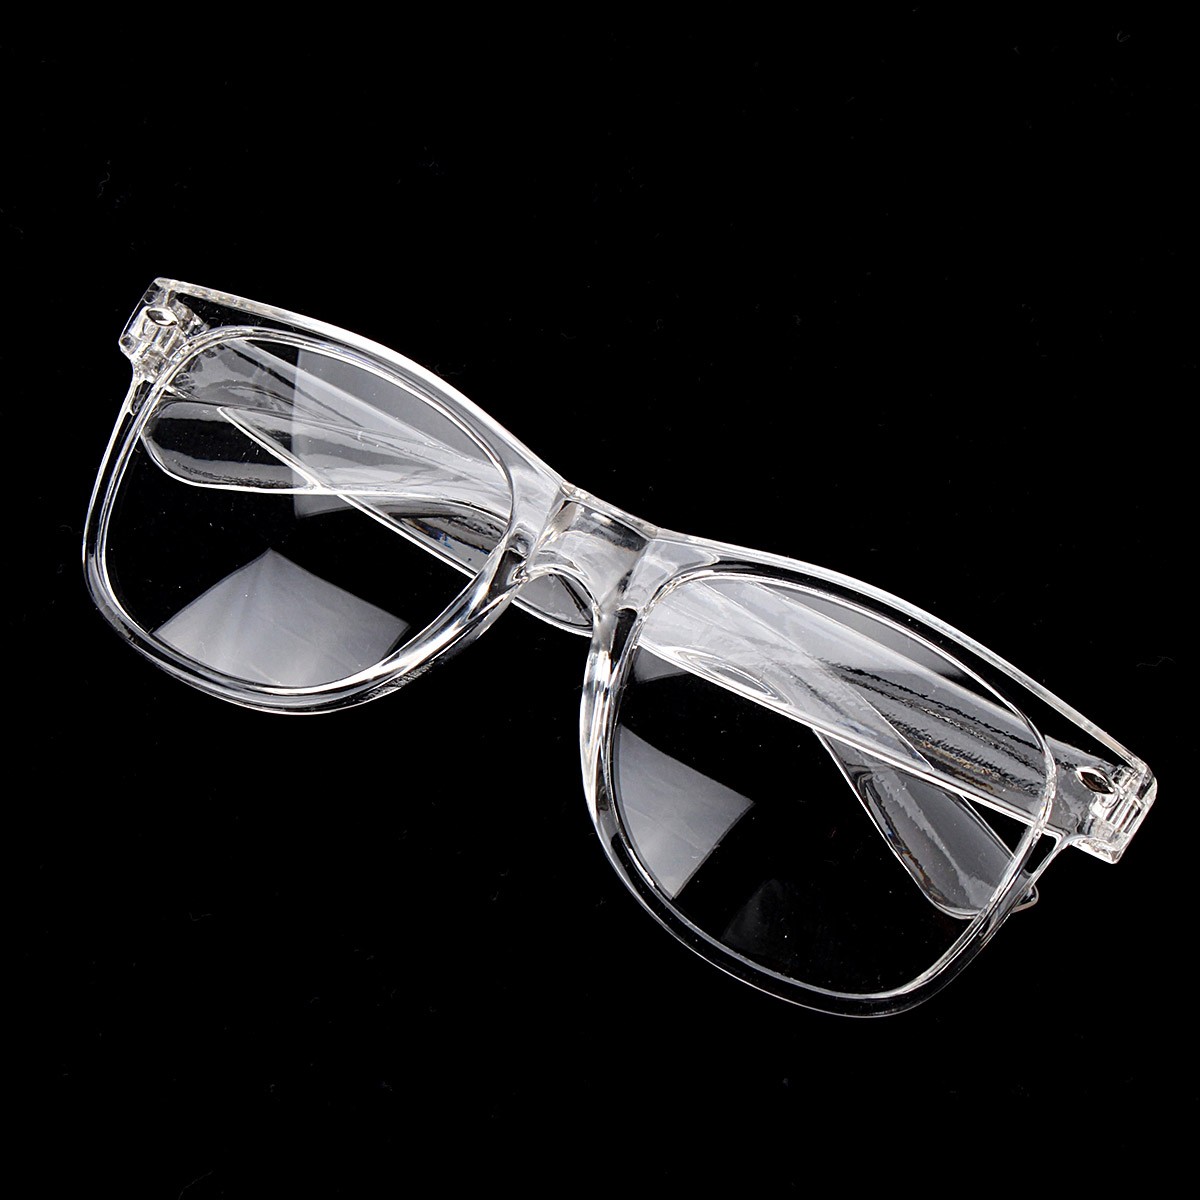 Unisex-Plastic-Transparent-Frame-Glasses-Retro-Plain-Lens-Eyeglasseess-1065770